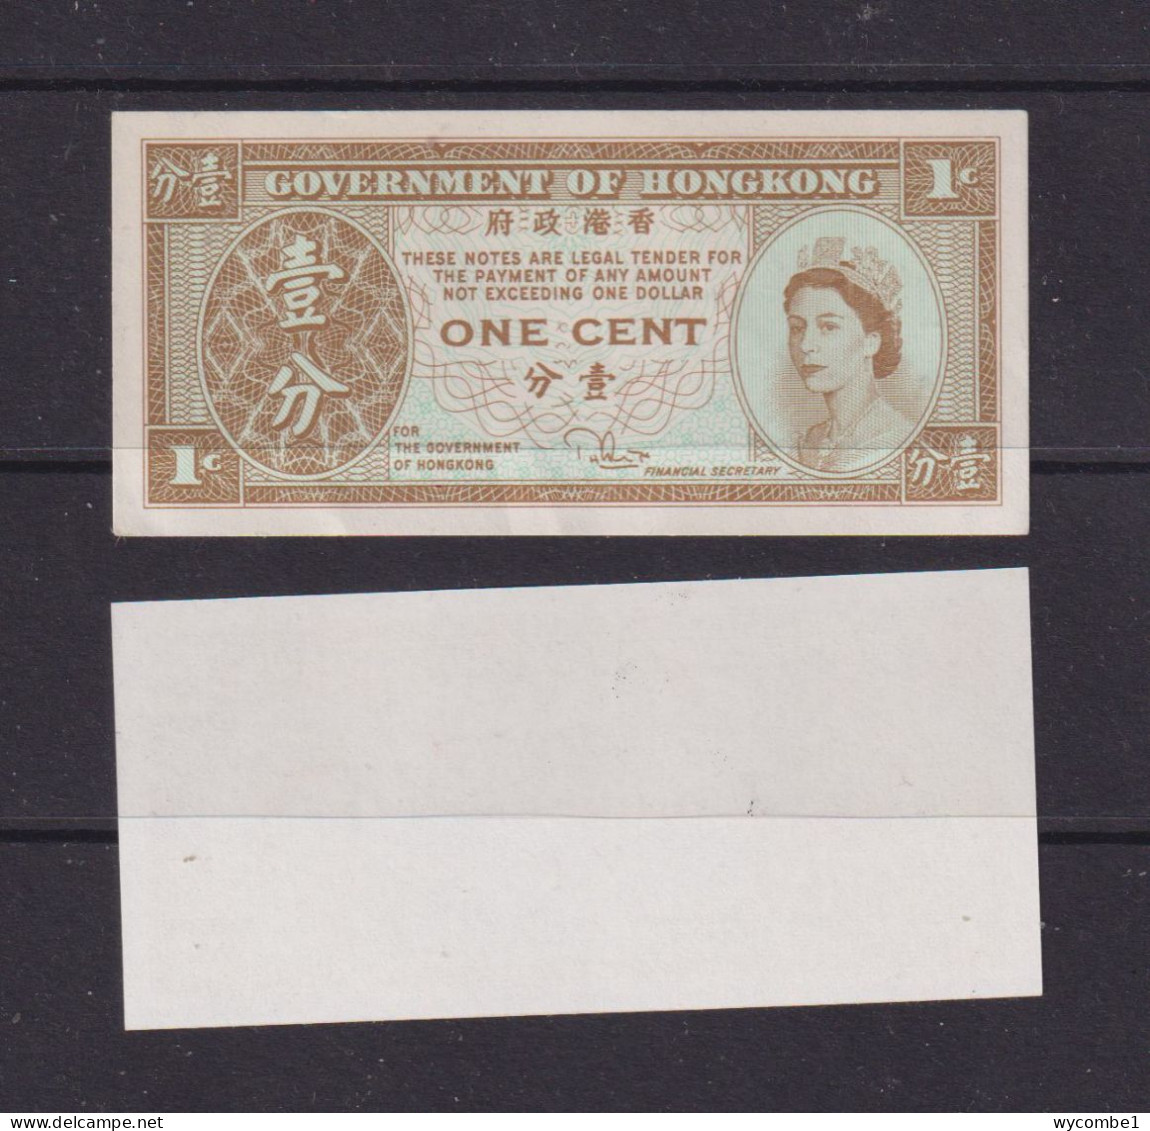 HONG KONG - 1961-71 1 Cent UNC Banknote - Hong Kong